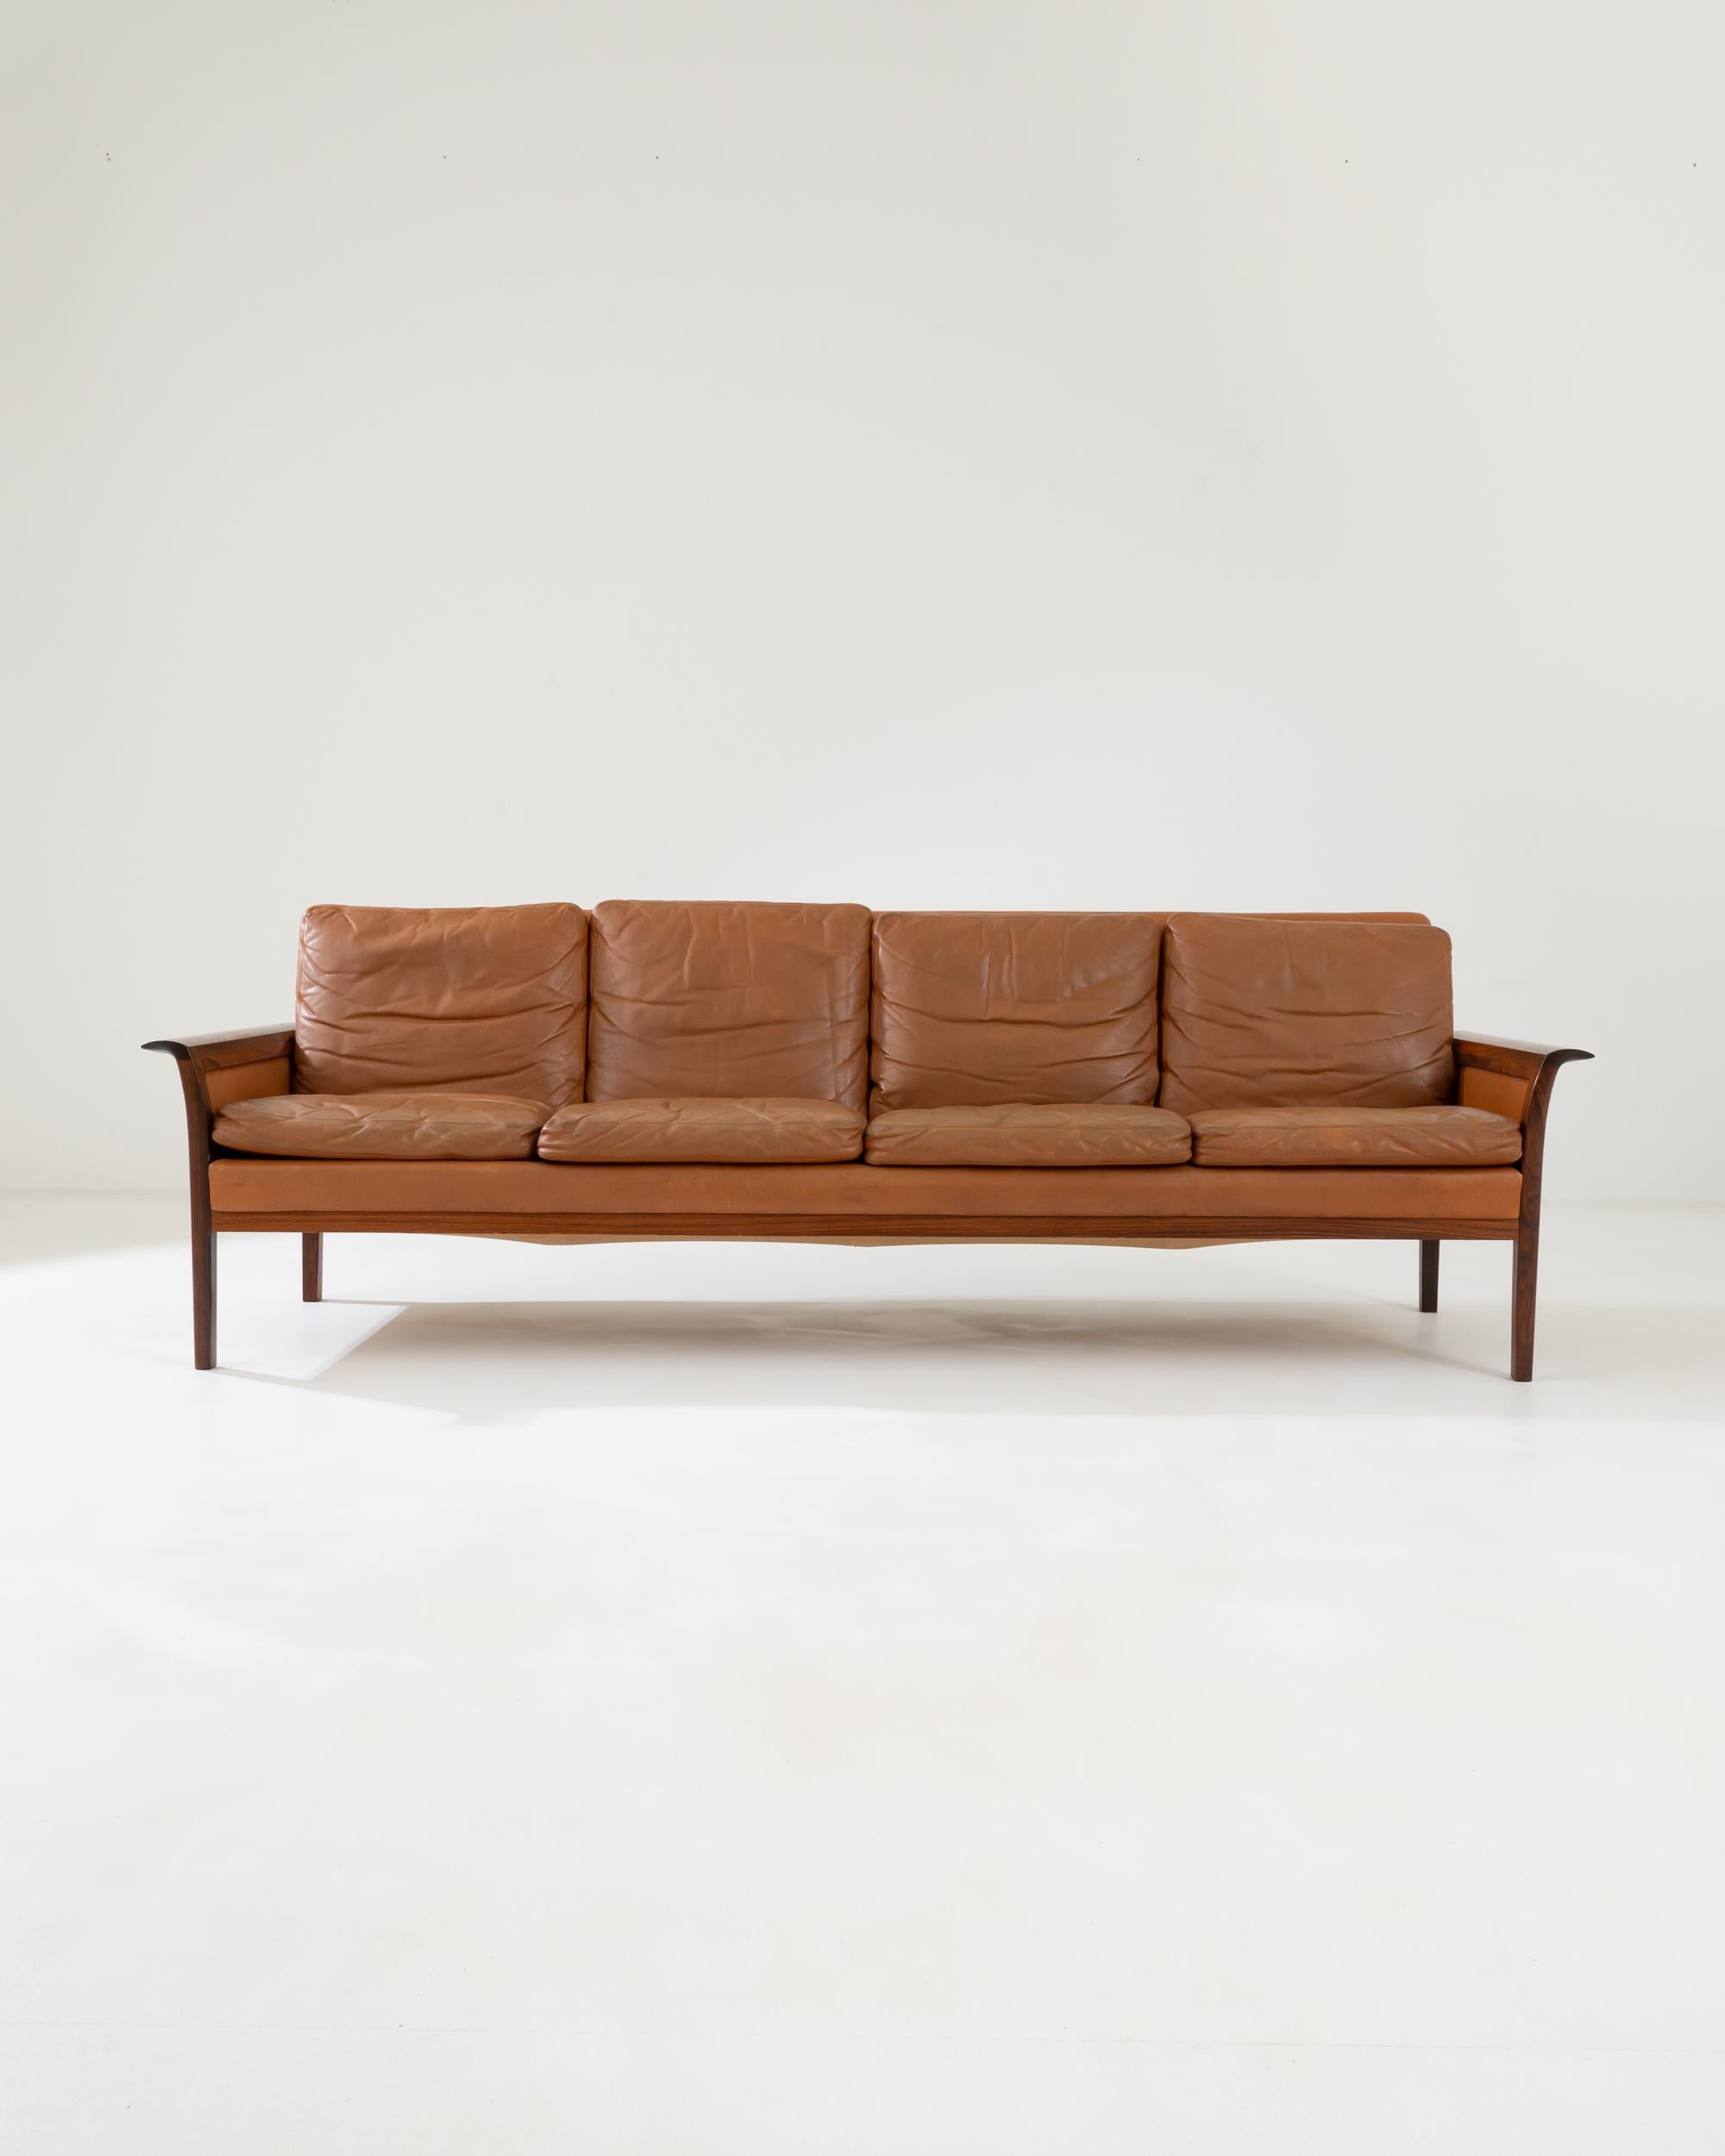 Ein viersitziges Ledersofa, das in den 1960er Jahren von Hans Olsen in Dänemark entworfen wurde. Dieses elegante und zugleich einladende Sofa bietet vier Personen einen großzügigen Sitzbereich. Dieses von dem experimentellen Möbeldesigner Hans Olsen